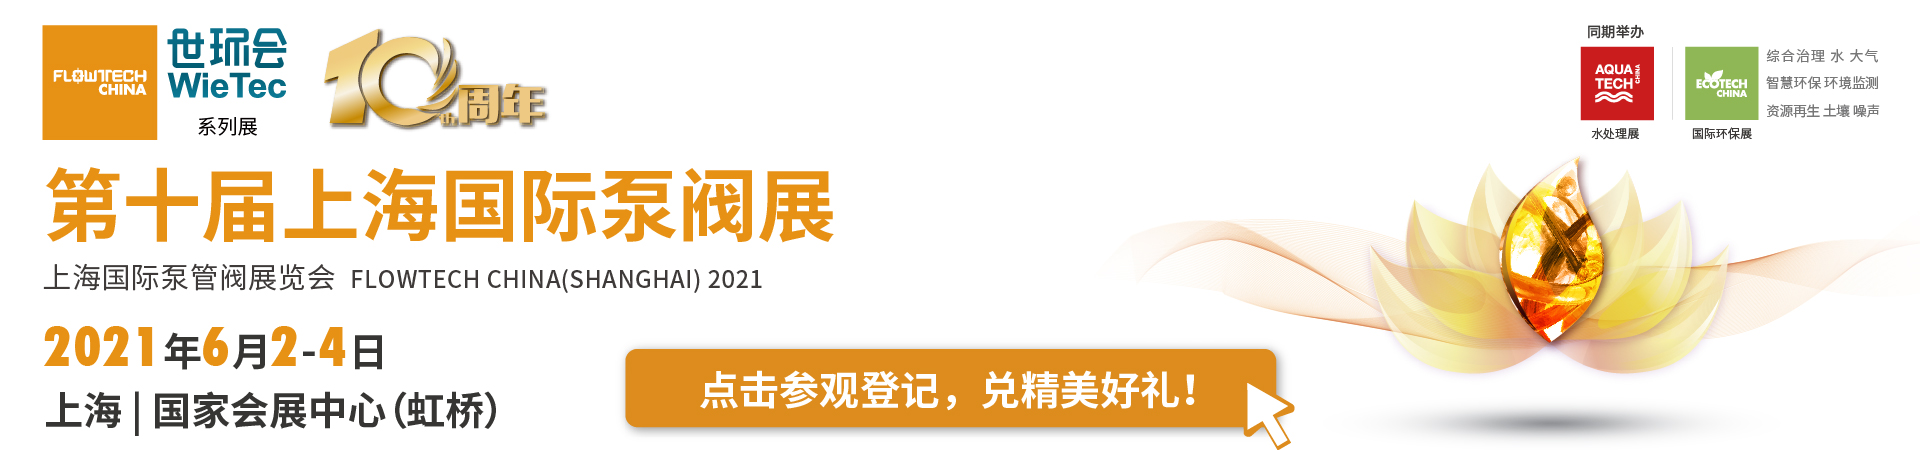 上海威派格智慧水务股份有限公司入驻第十届上海国际泵阀展，众多高质量产品将相继展出 企业动态 第4张